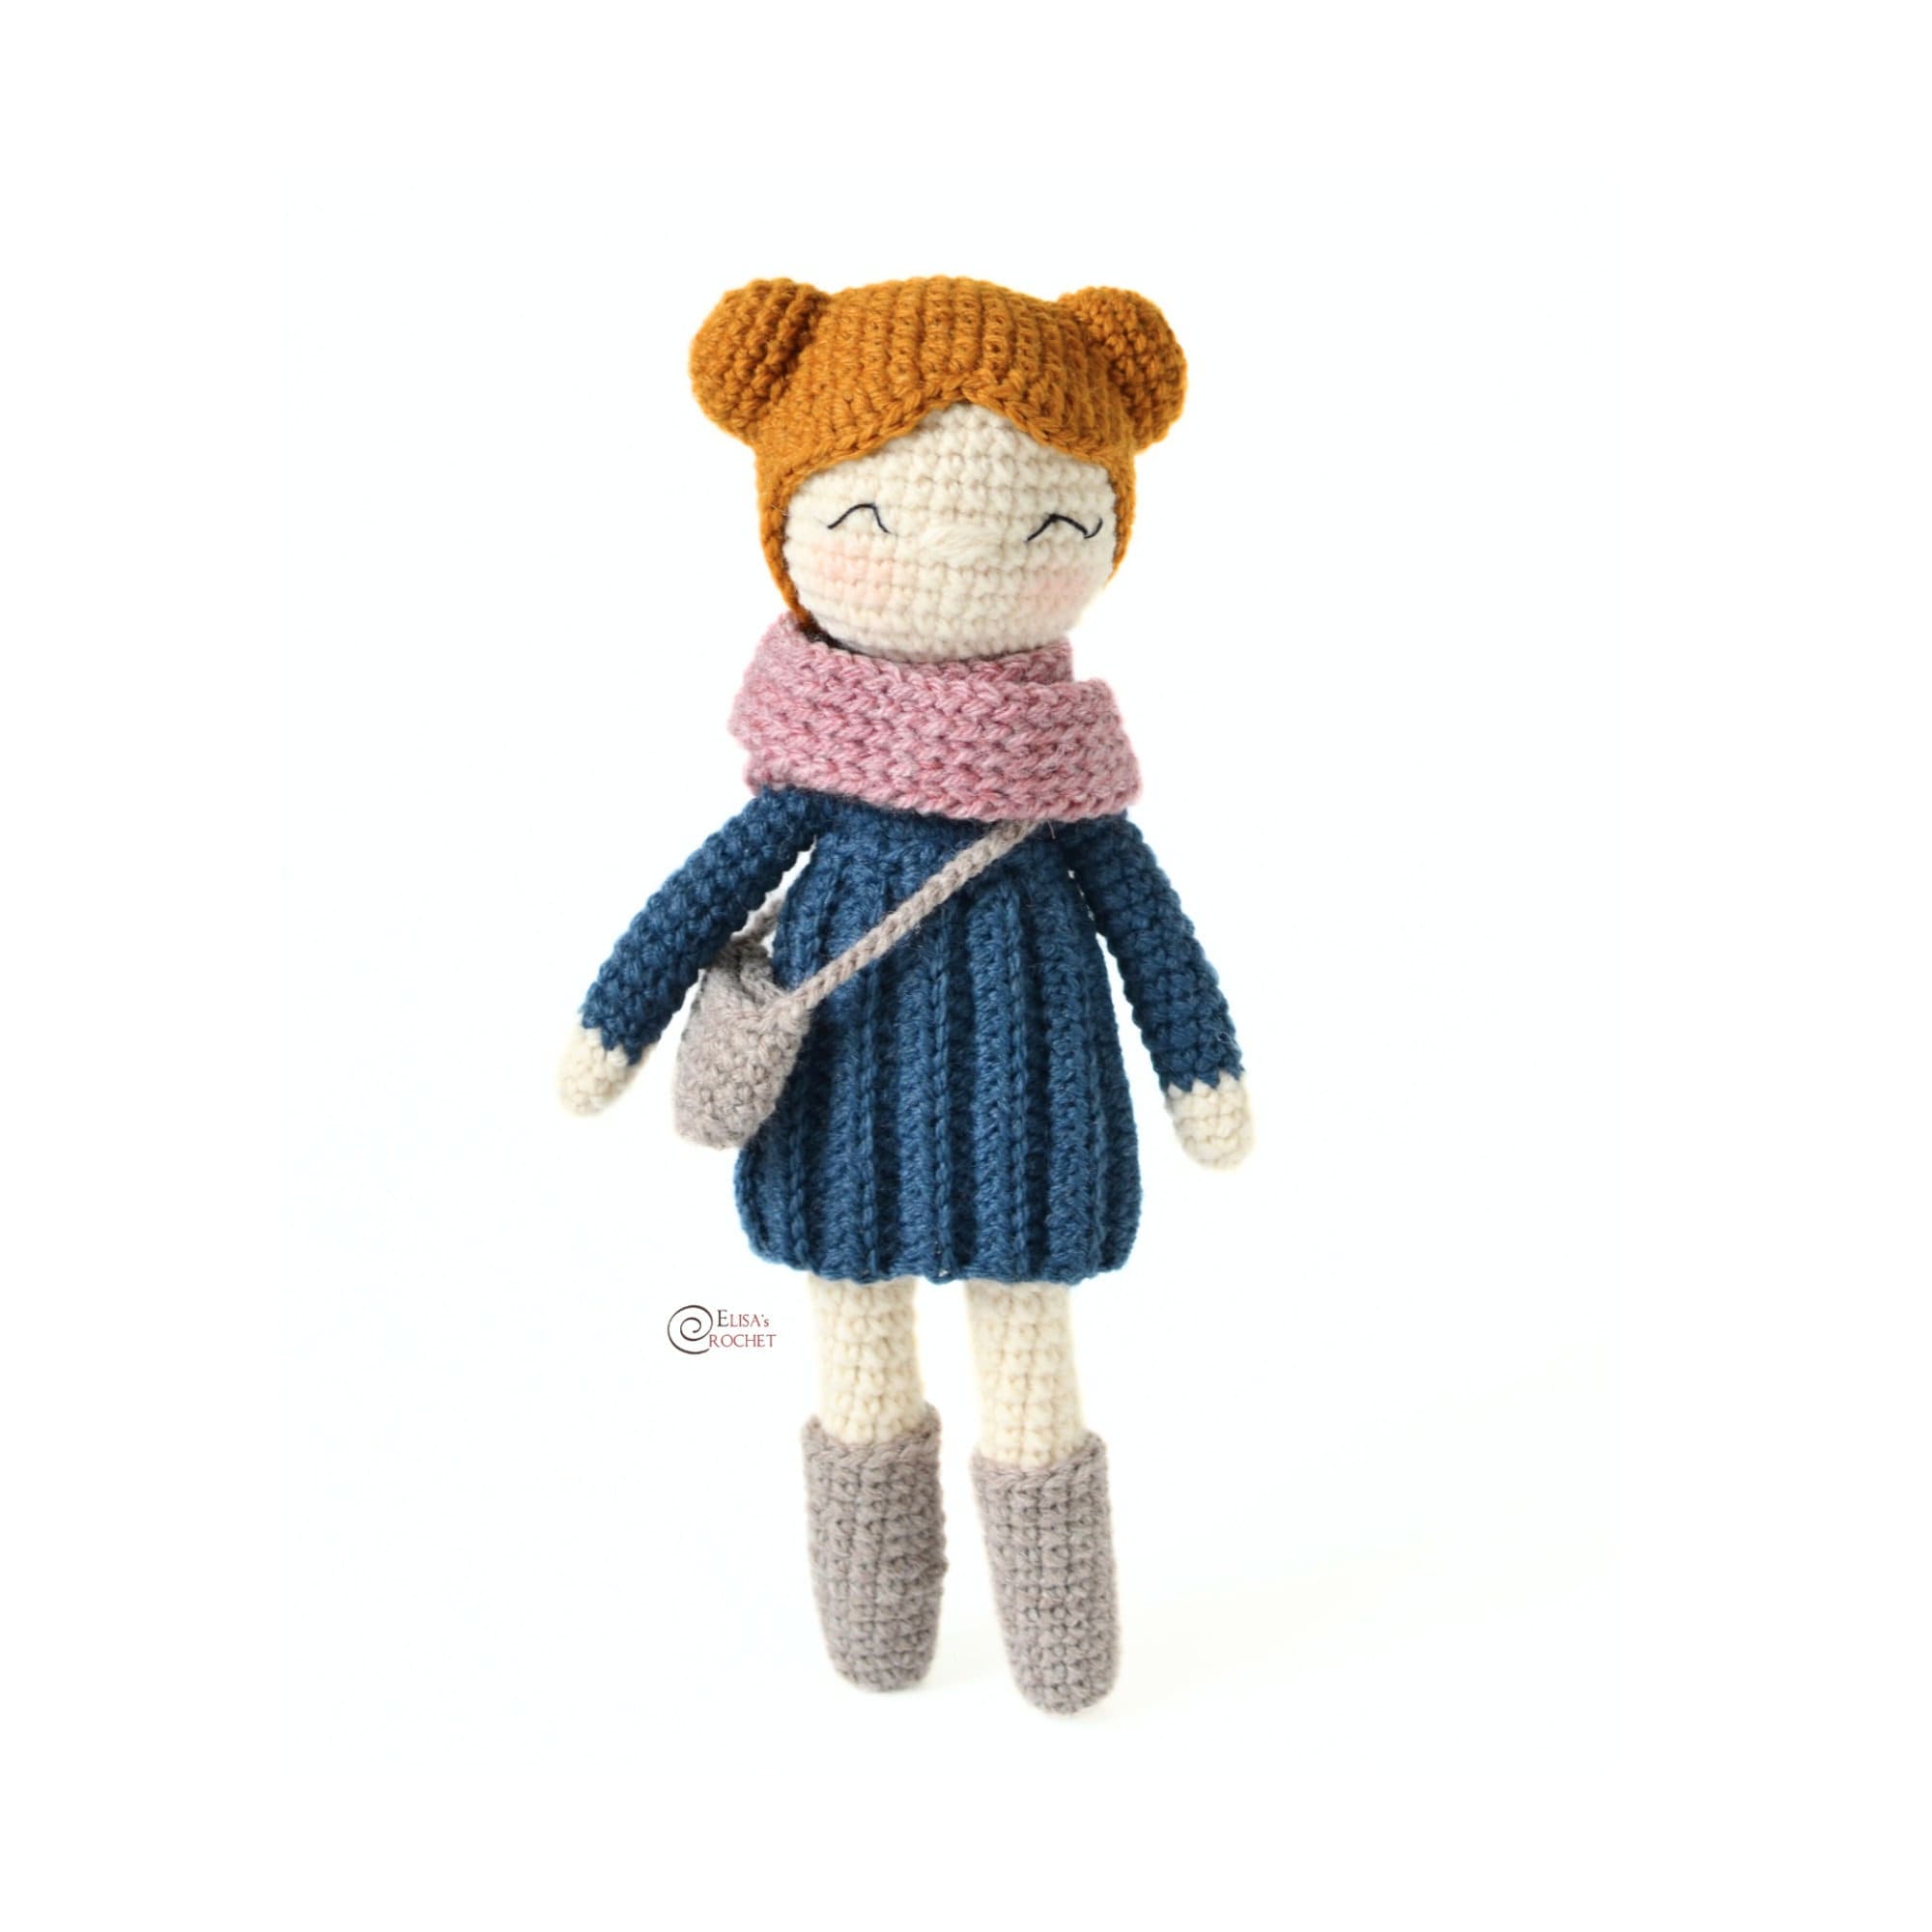 Kids Edition Mini Dress up Doll Amigurumi Pattern. Pdf Crochet Pattern 